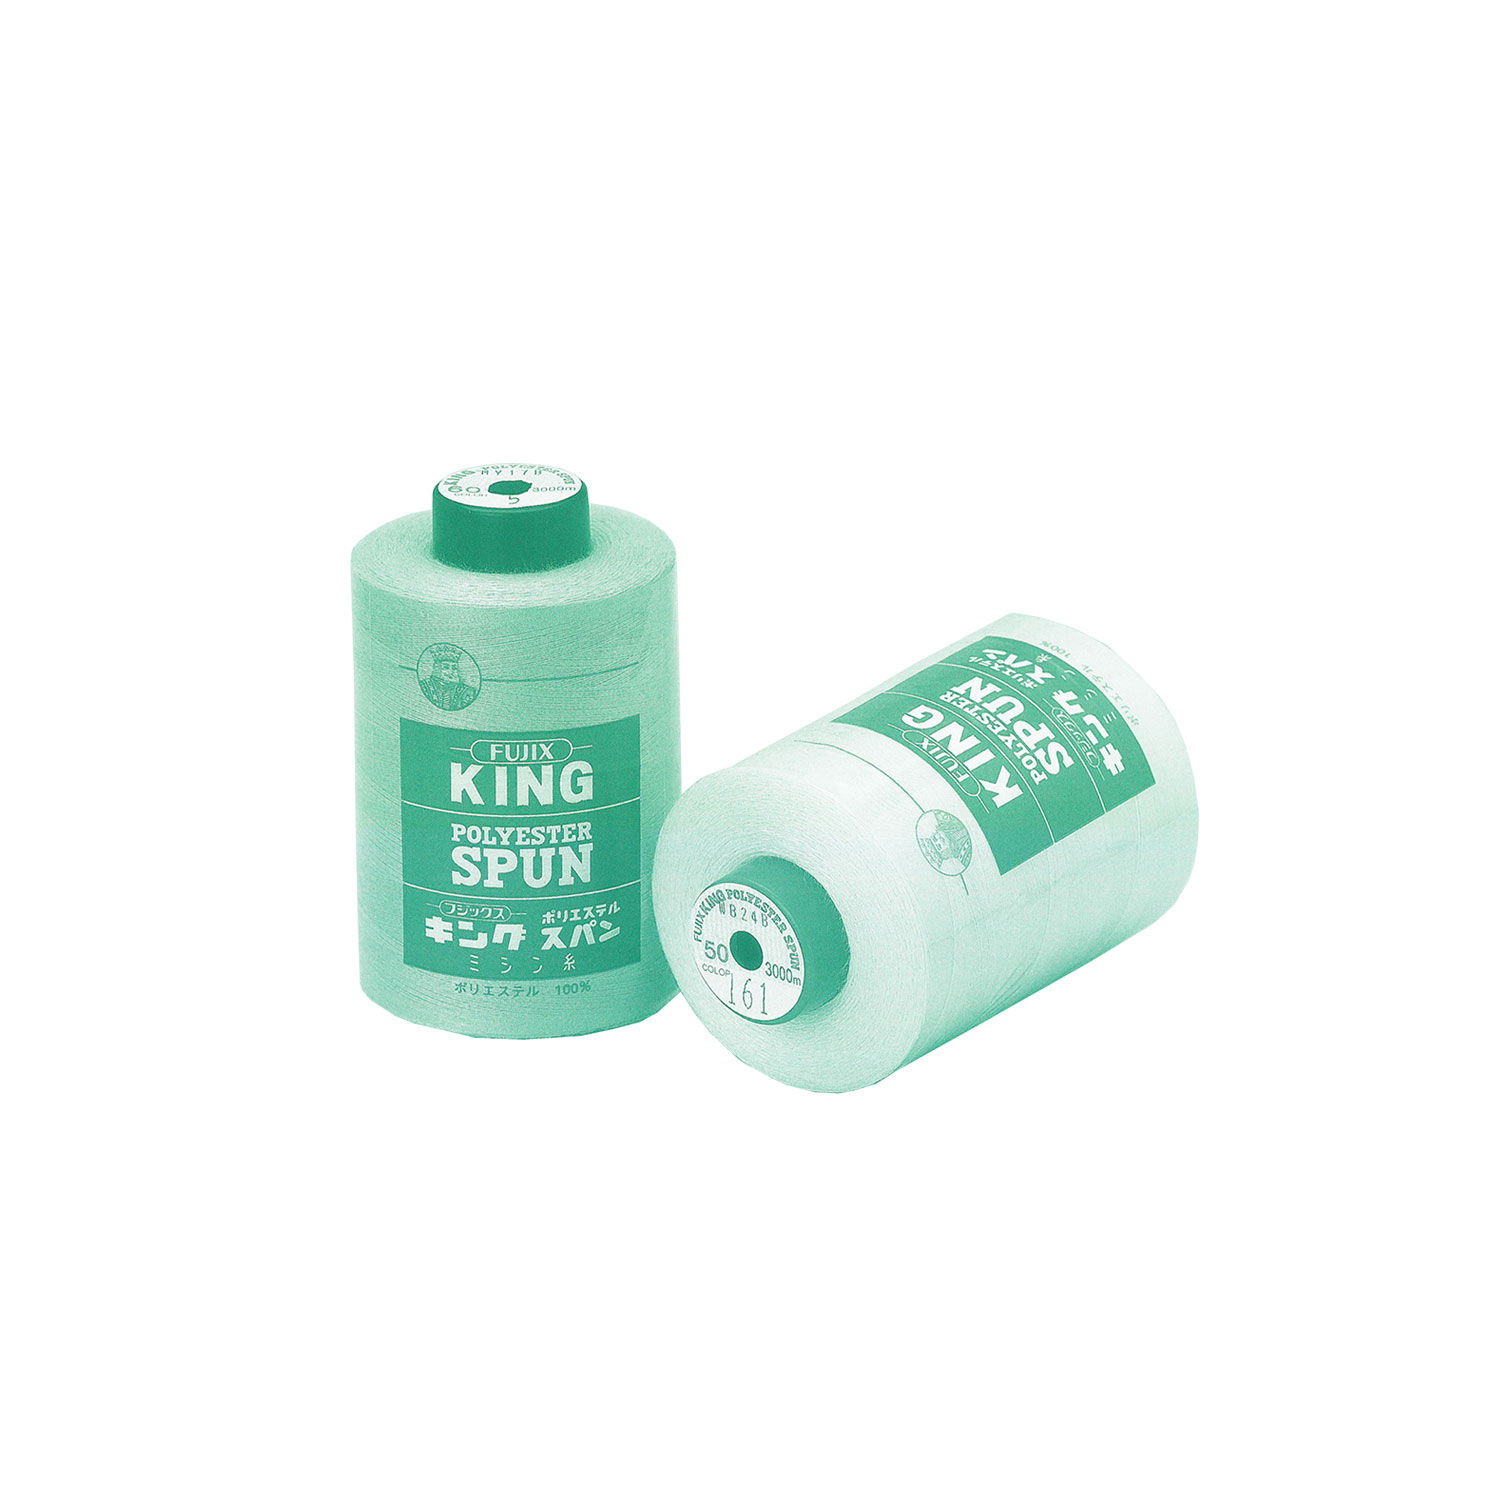 キングスパン King Polyester Spun (Industrial)[Hilo] FUJIX